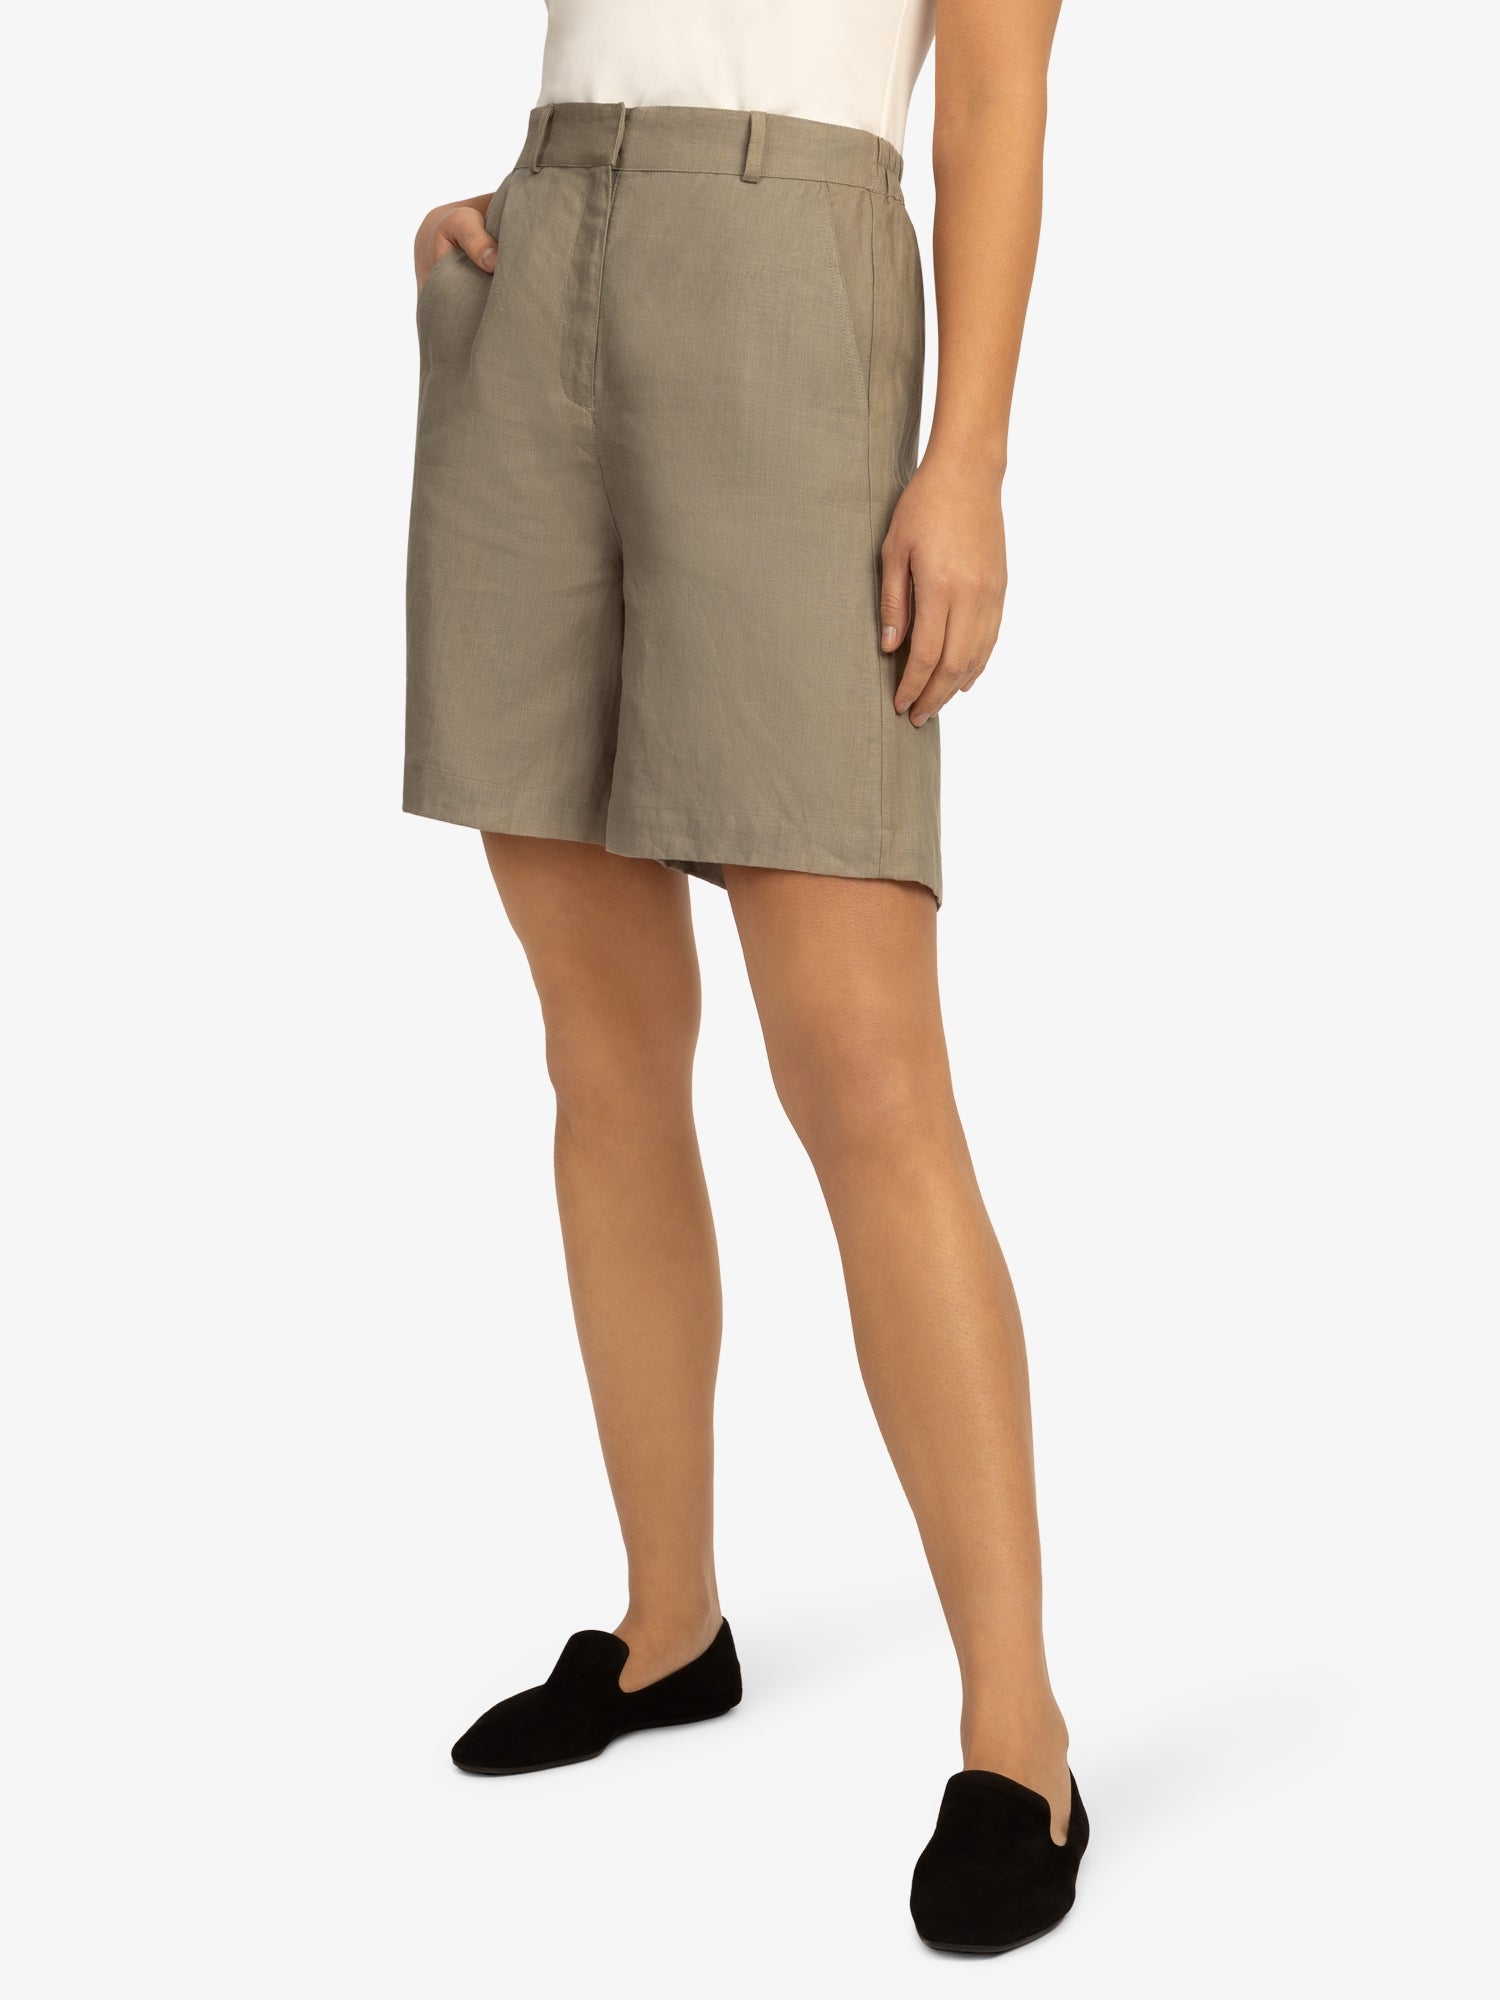 Mint & Mia Leinen Shorts aus hochwertigem Leinen Material mit Basic Stil | khaki